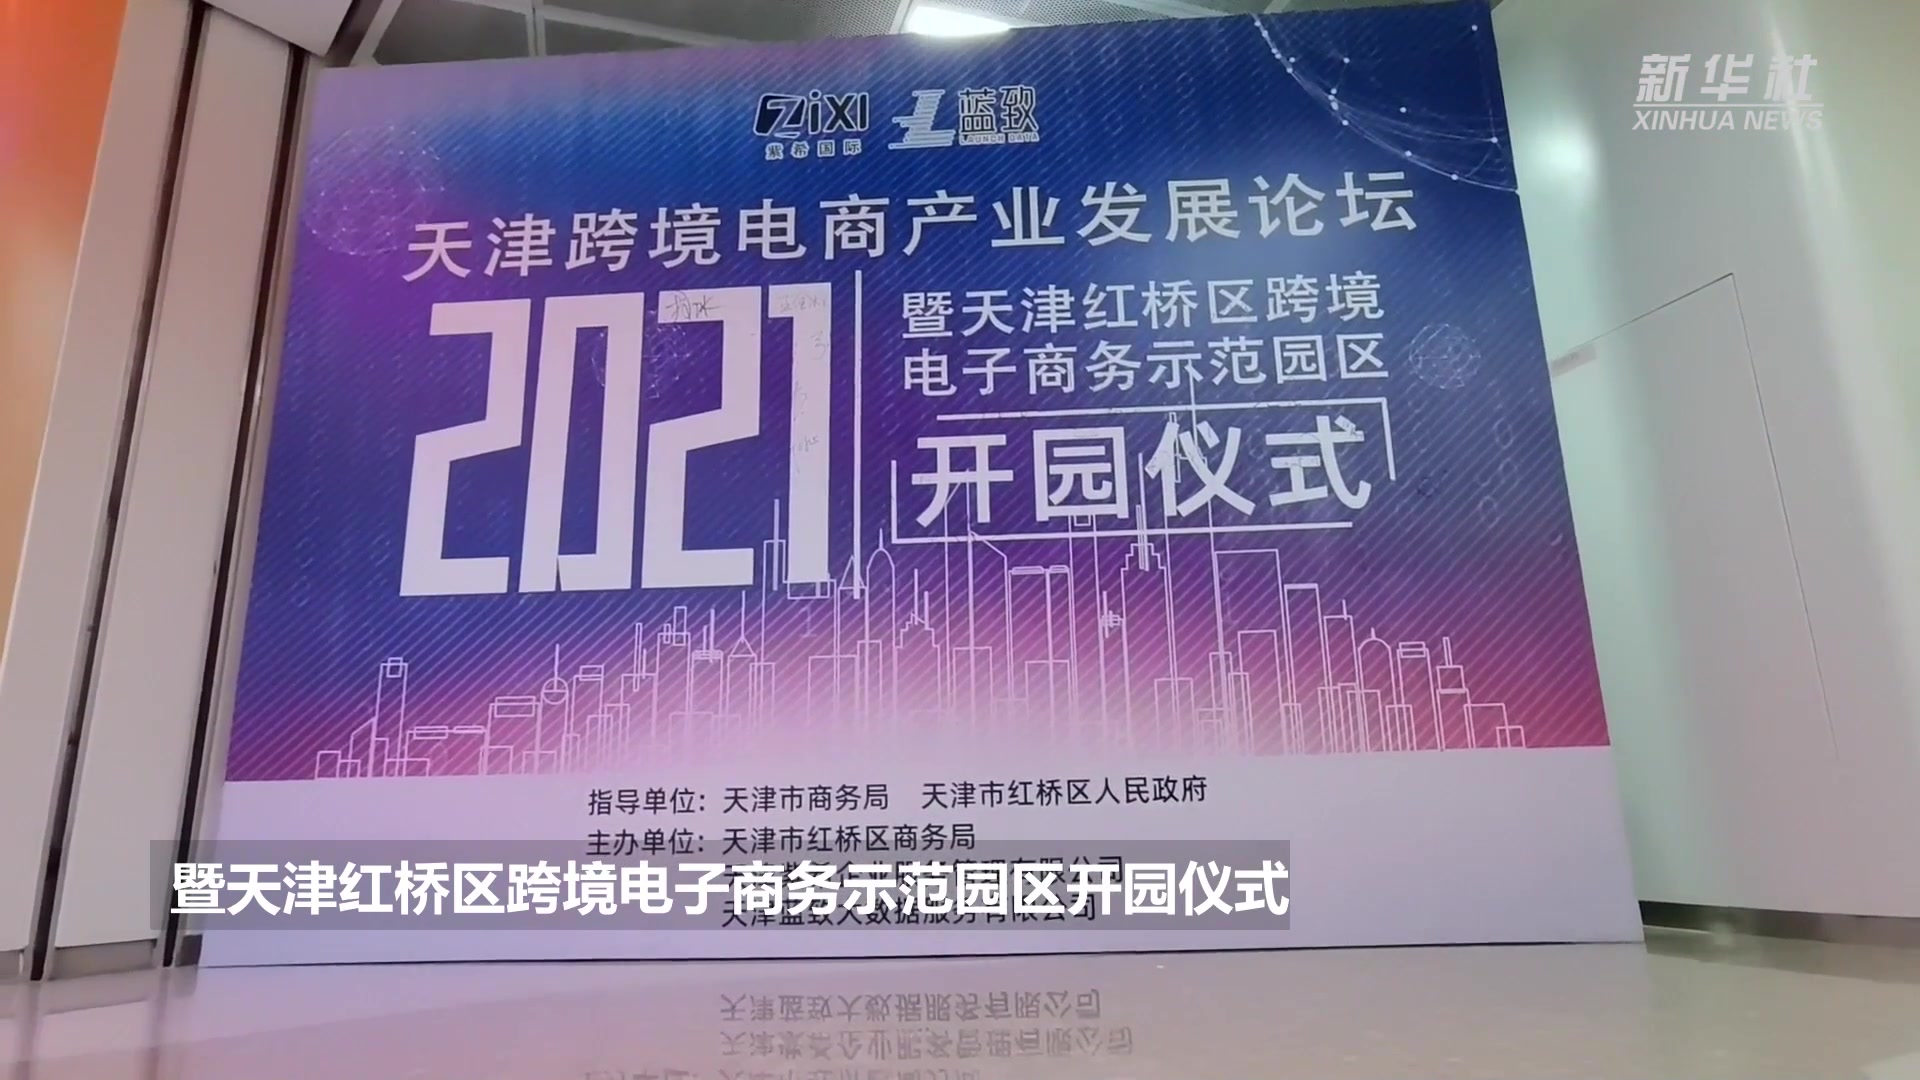 天津红桥区跨境电子商务示范园区挂牌运营